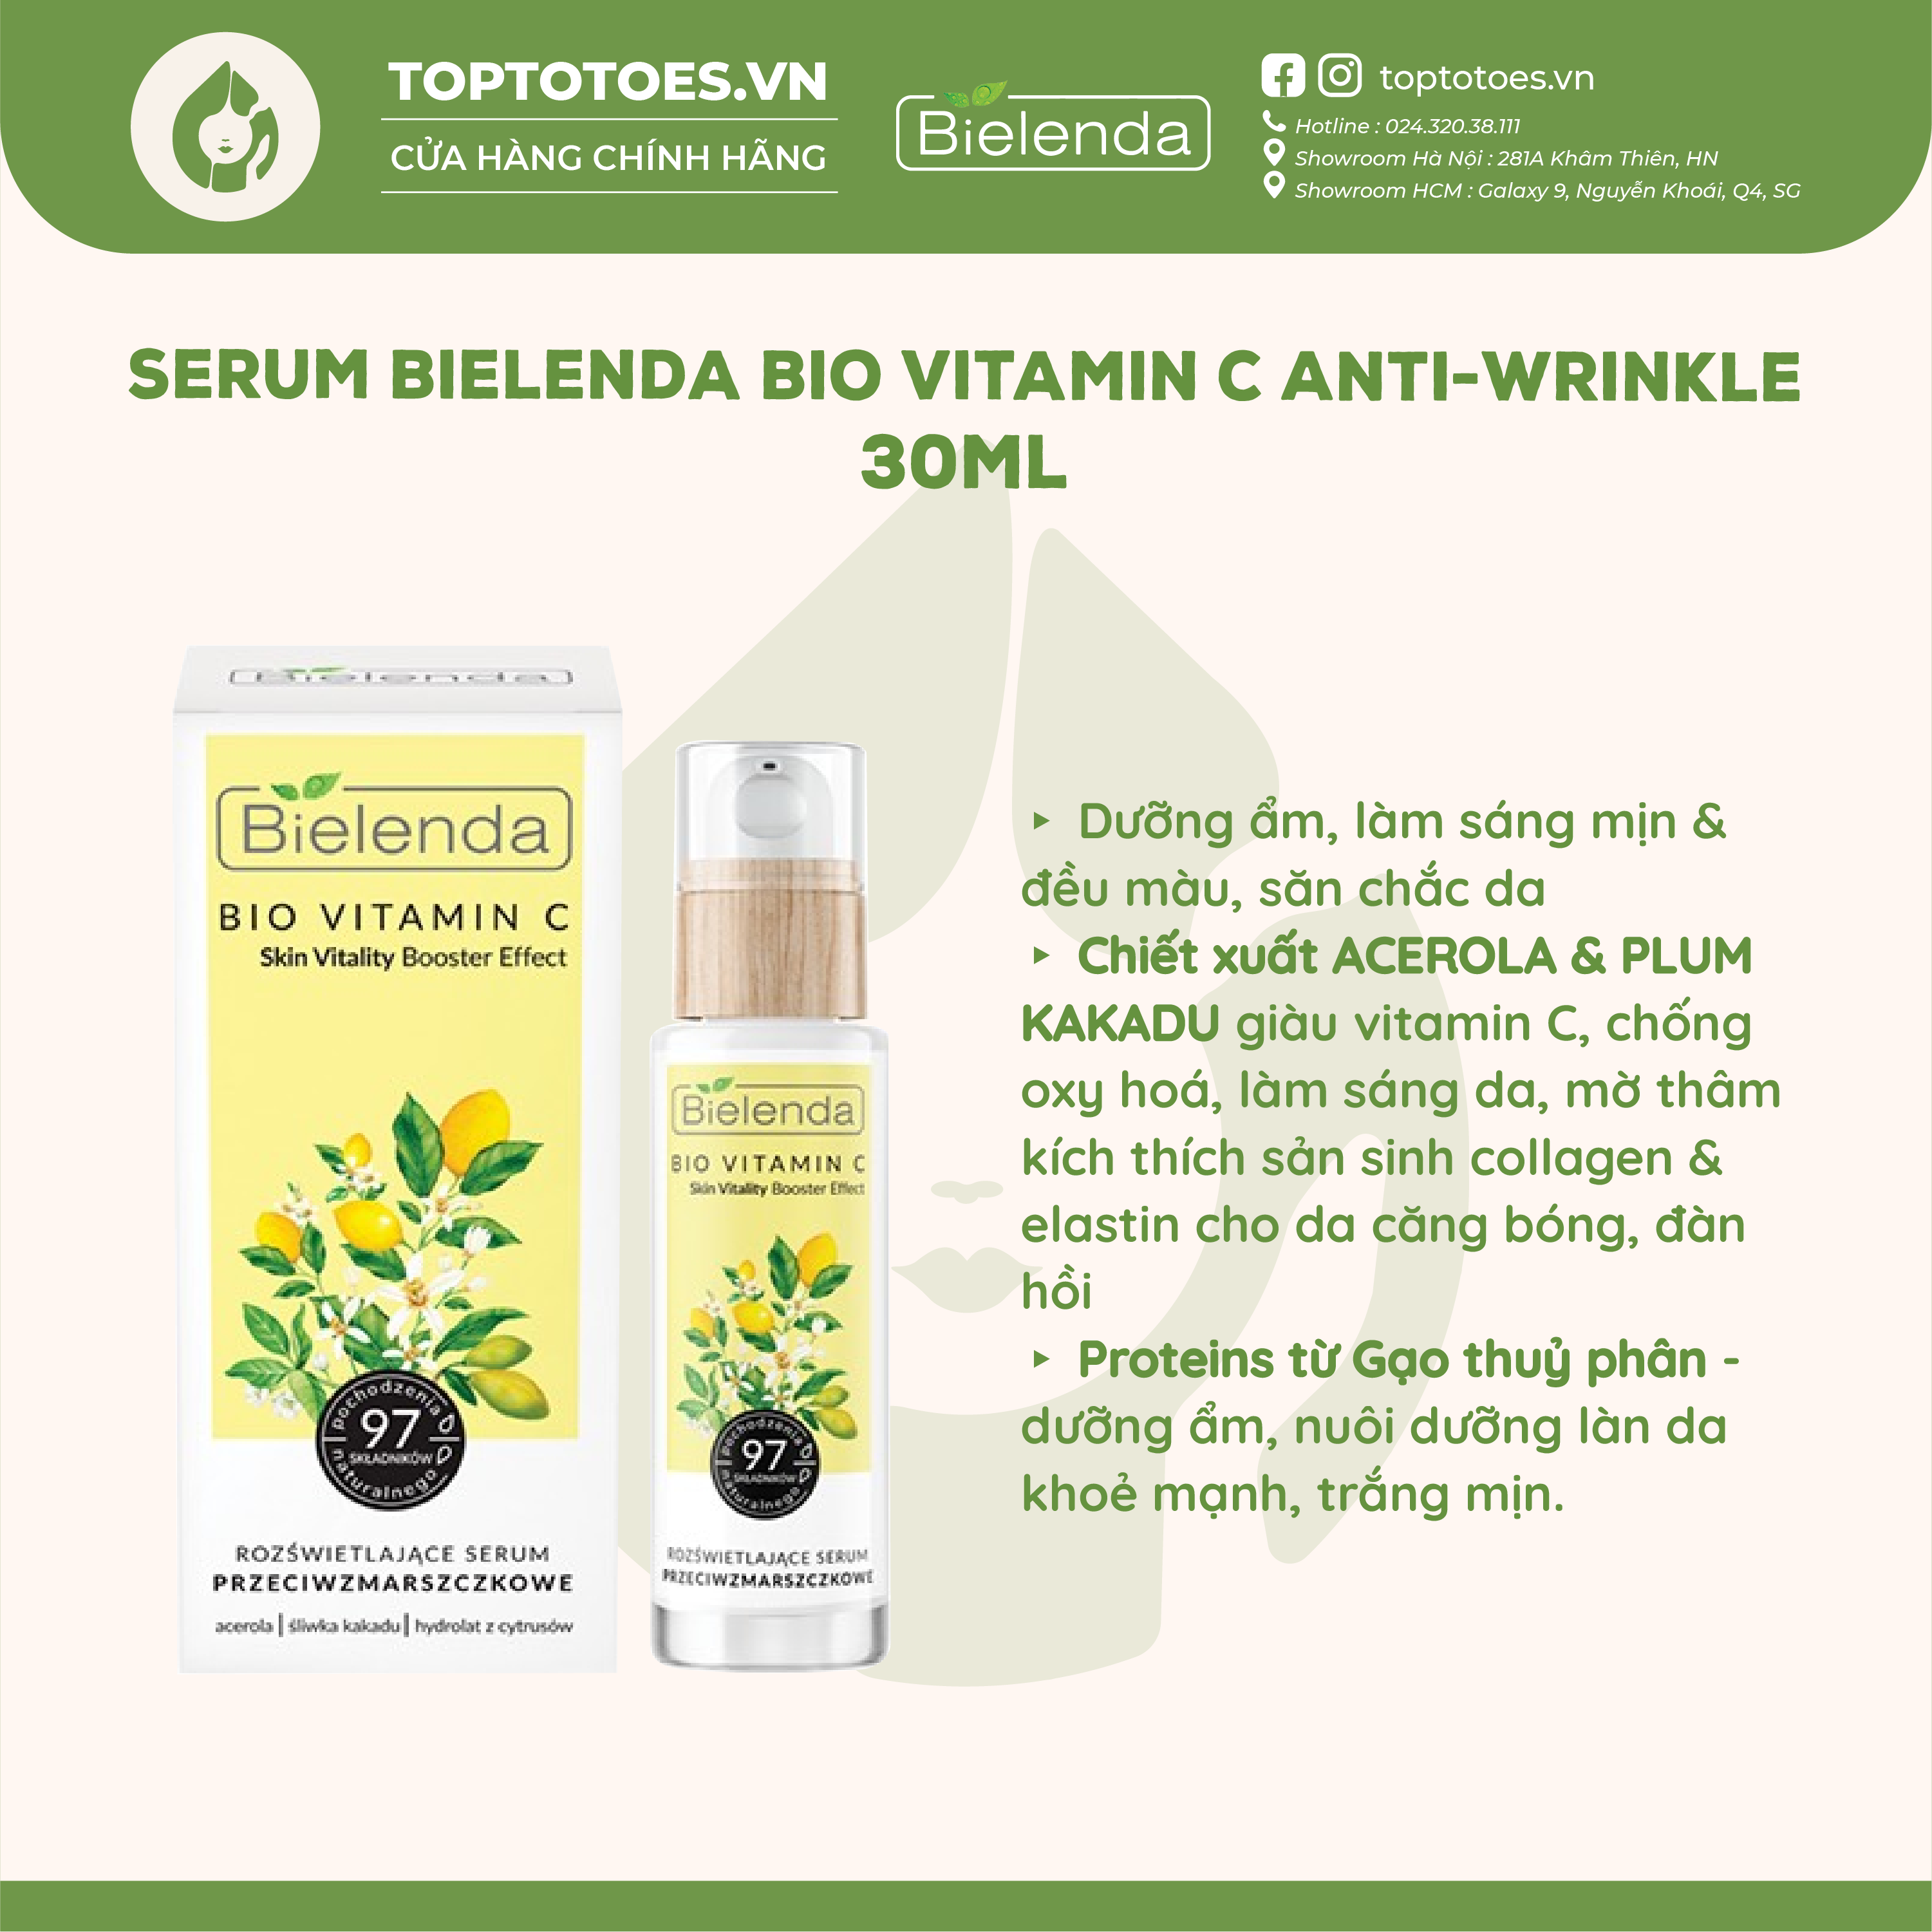 Serum Bielenda Bio Vitamin C Anti-Wrinkle làm sáng, trẻ hóa da